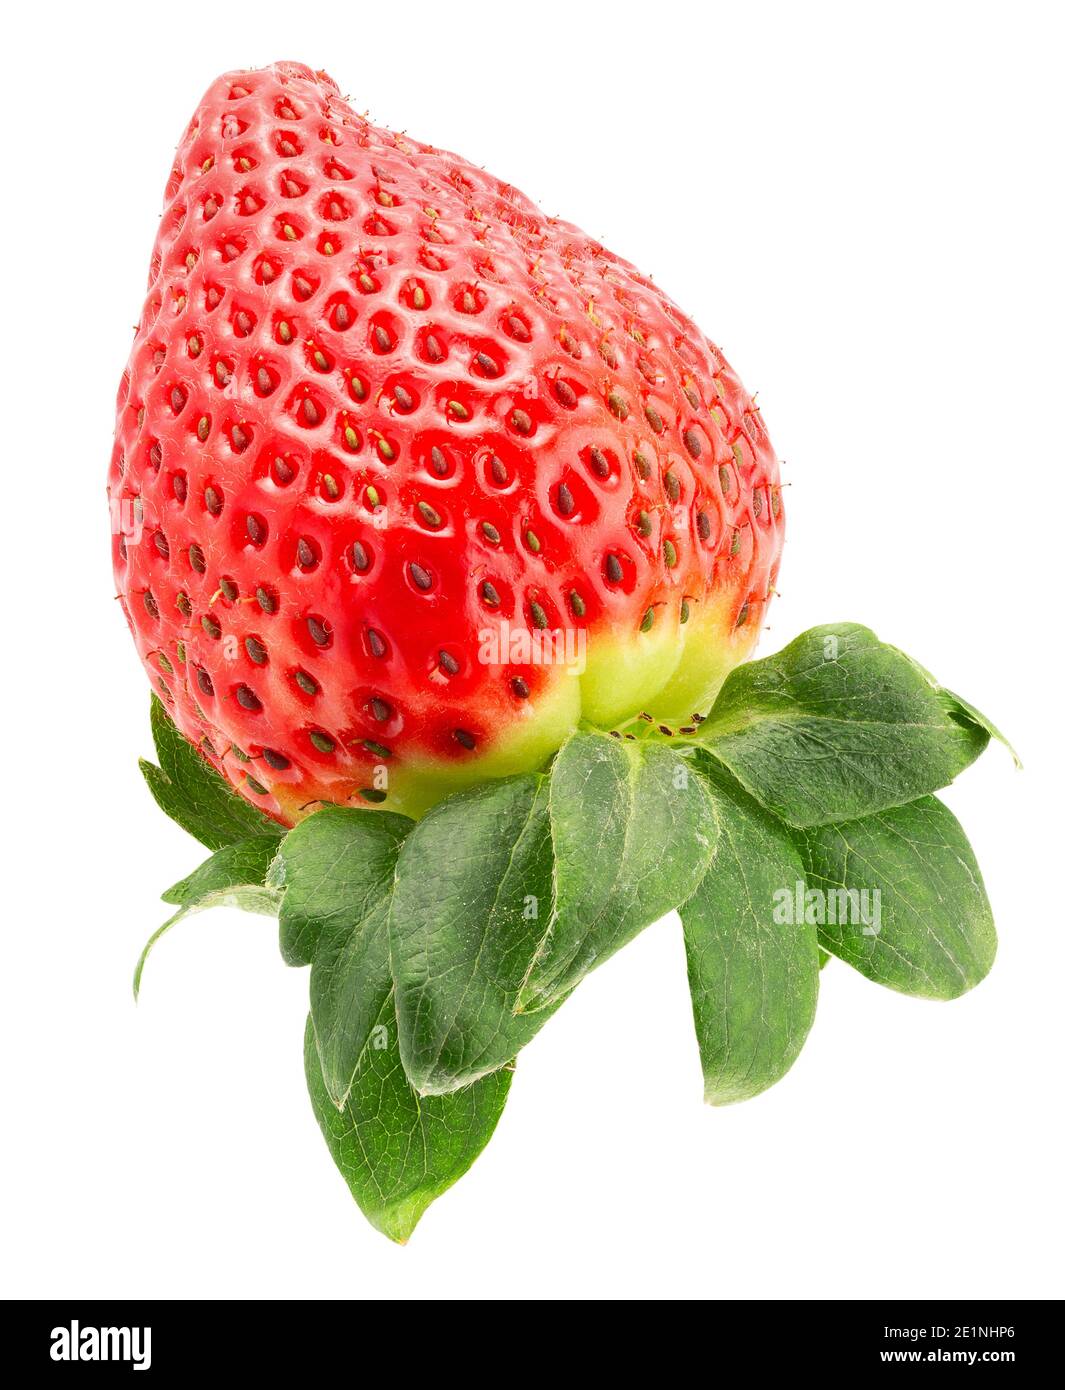 Erdbeere, isoliert auf einem weißen Hintergrund. Stockfoto